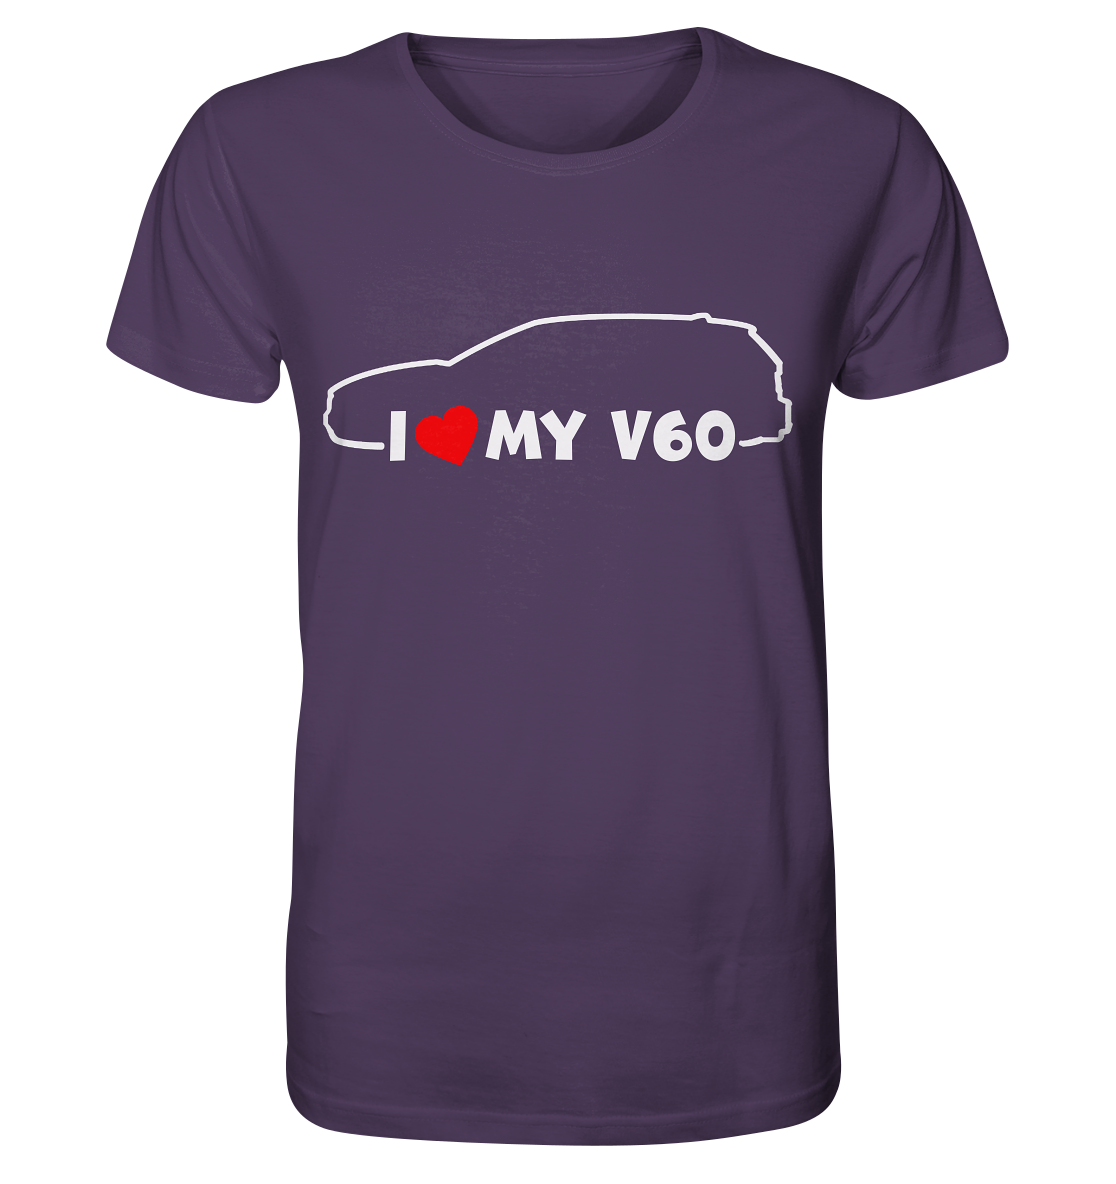 VGKV60IL-Organic Shirt